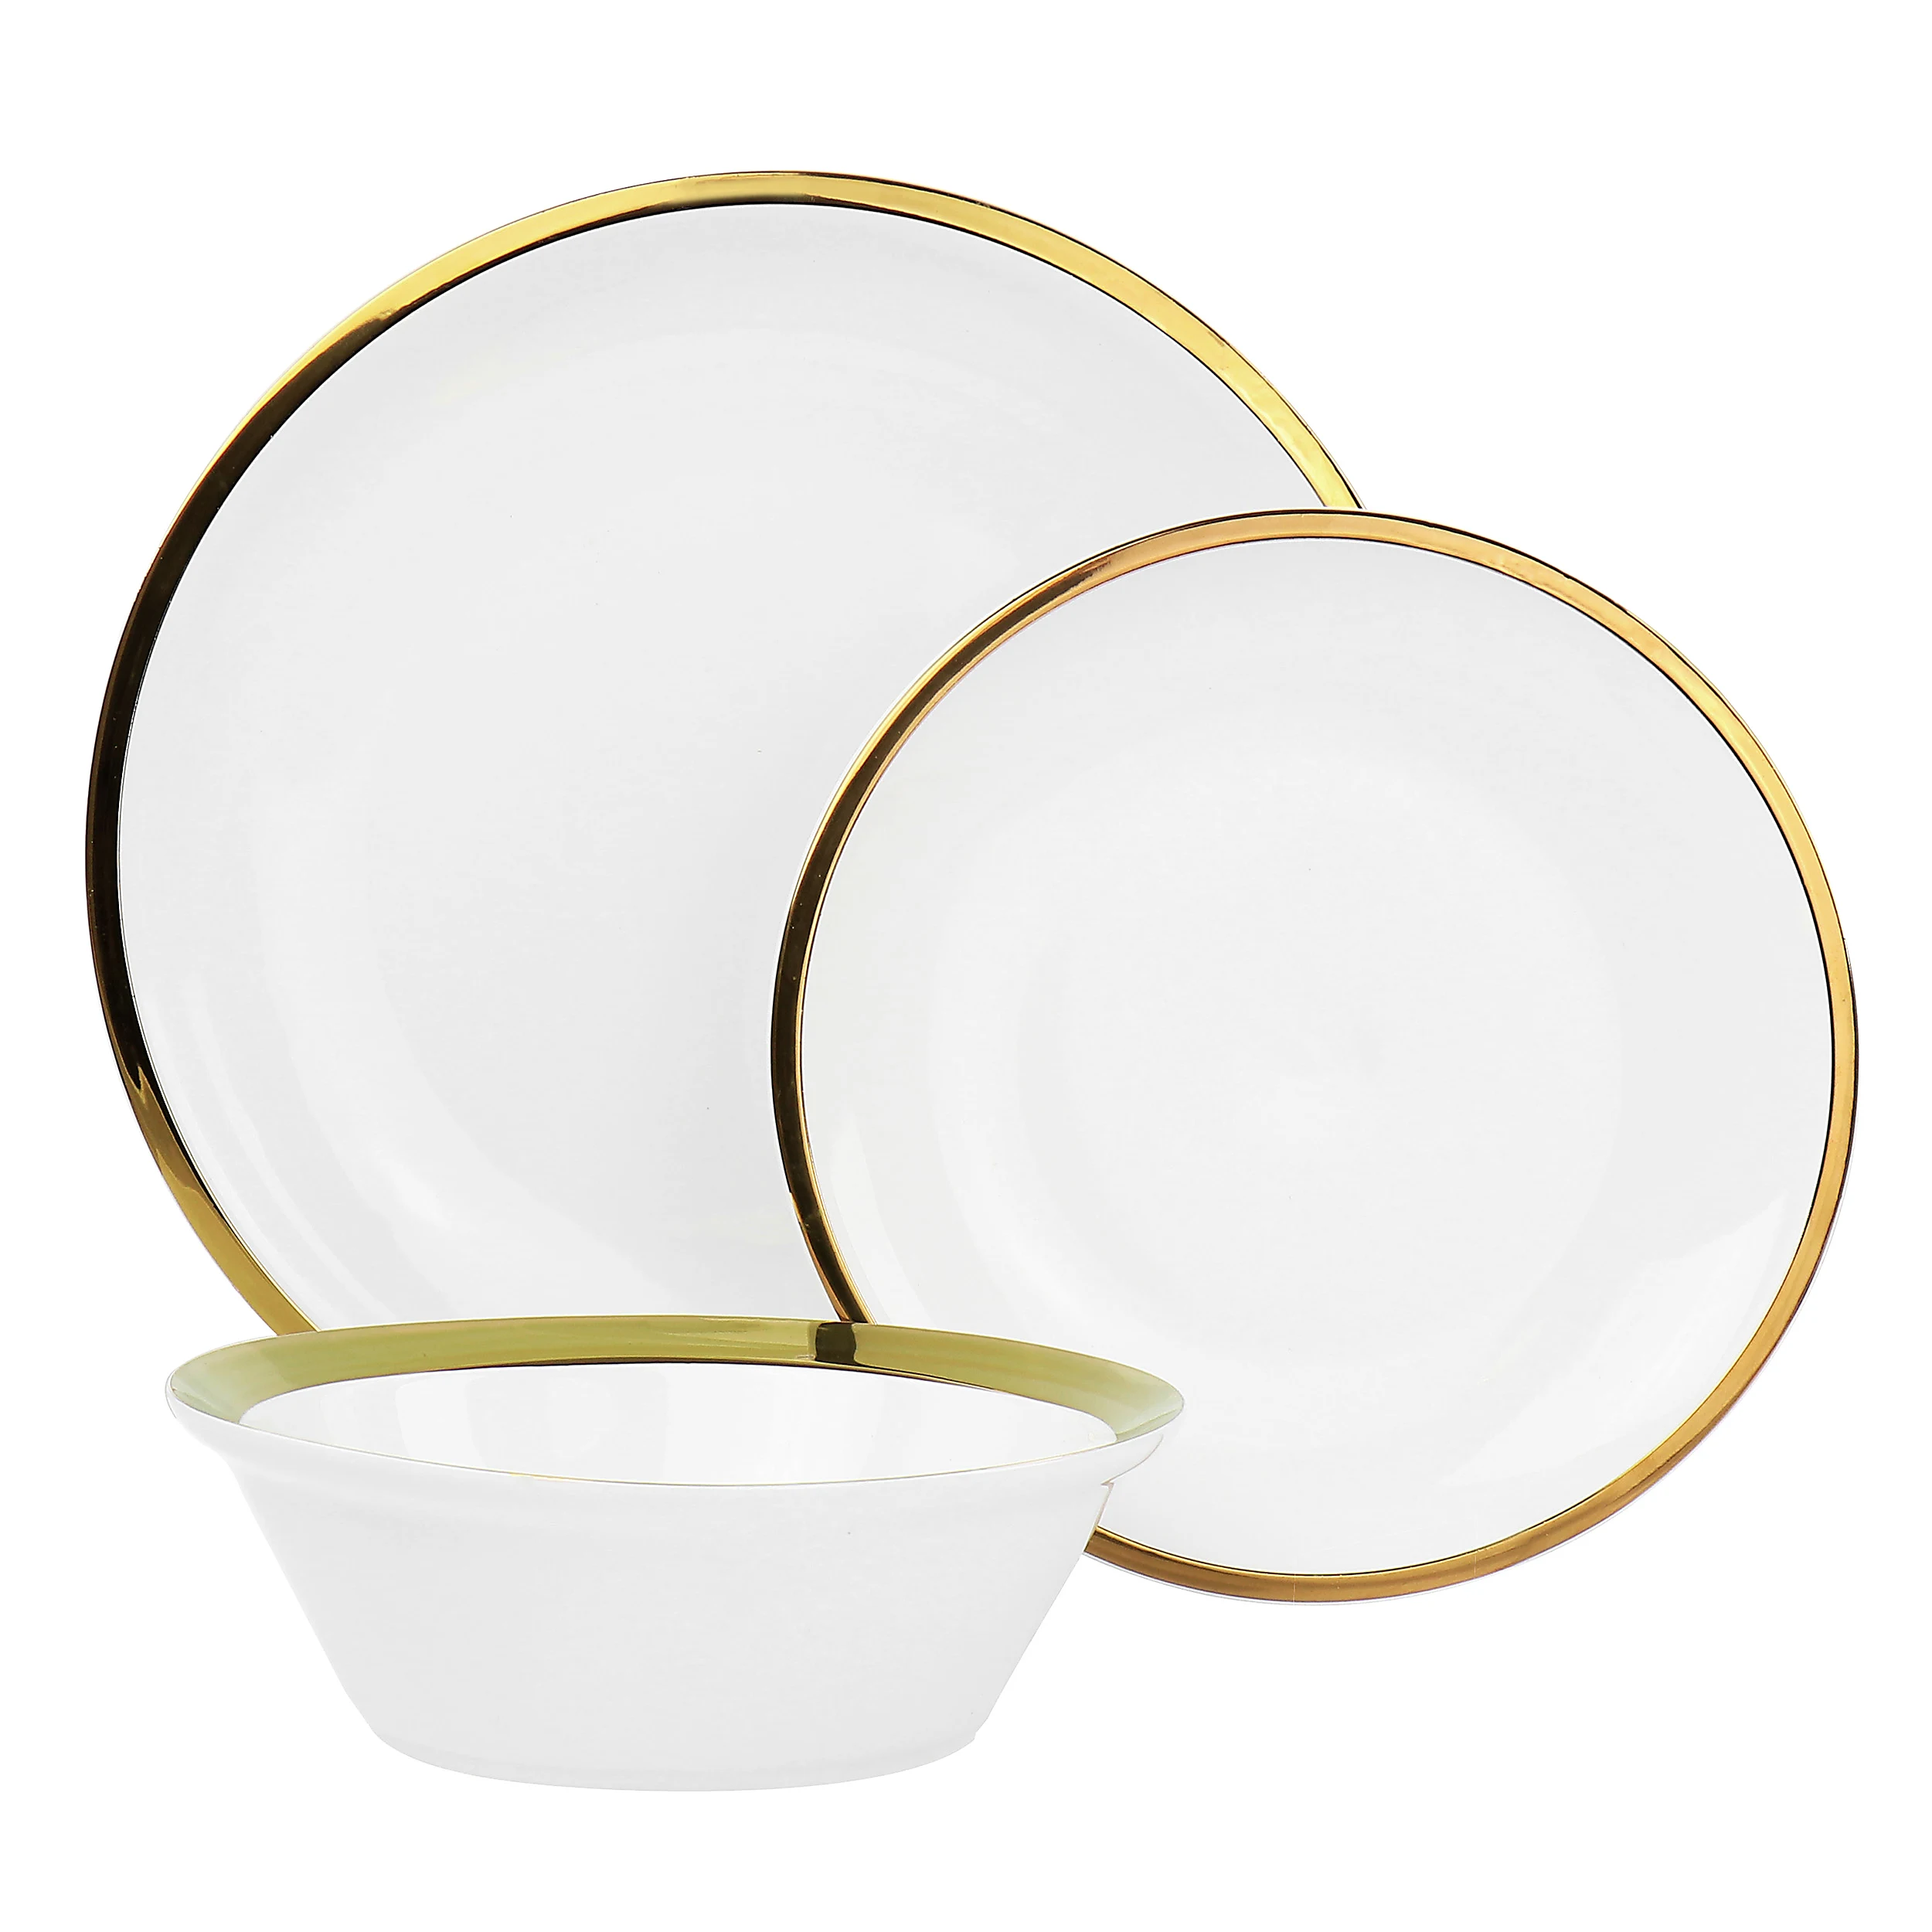 Dinnerware Round Plate White Gold Rim 6